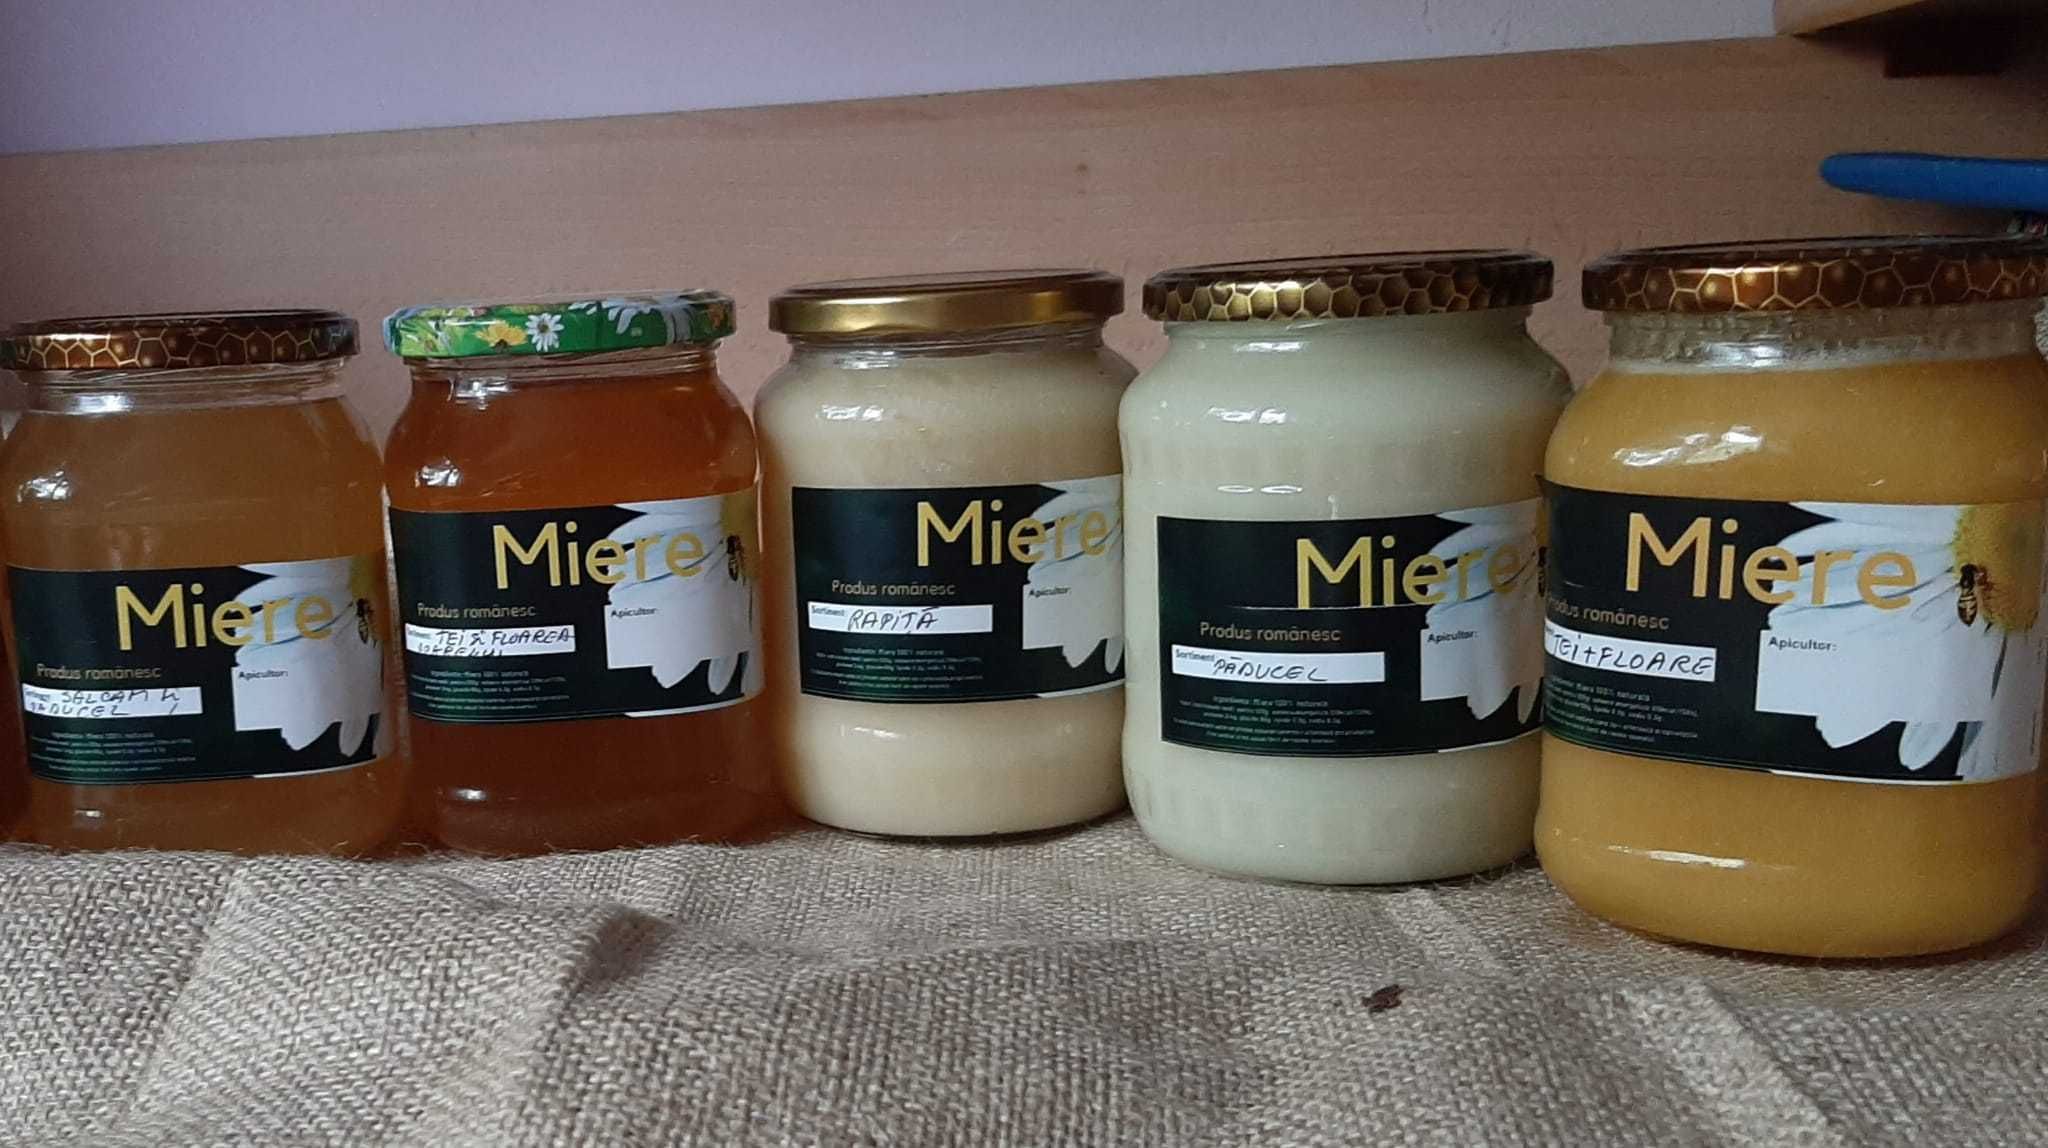 Vând miere autentică românească